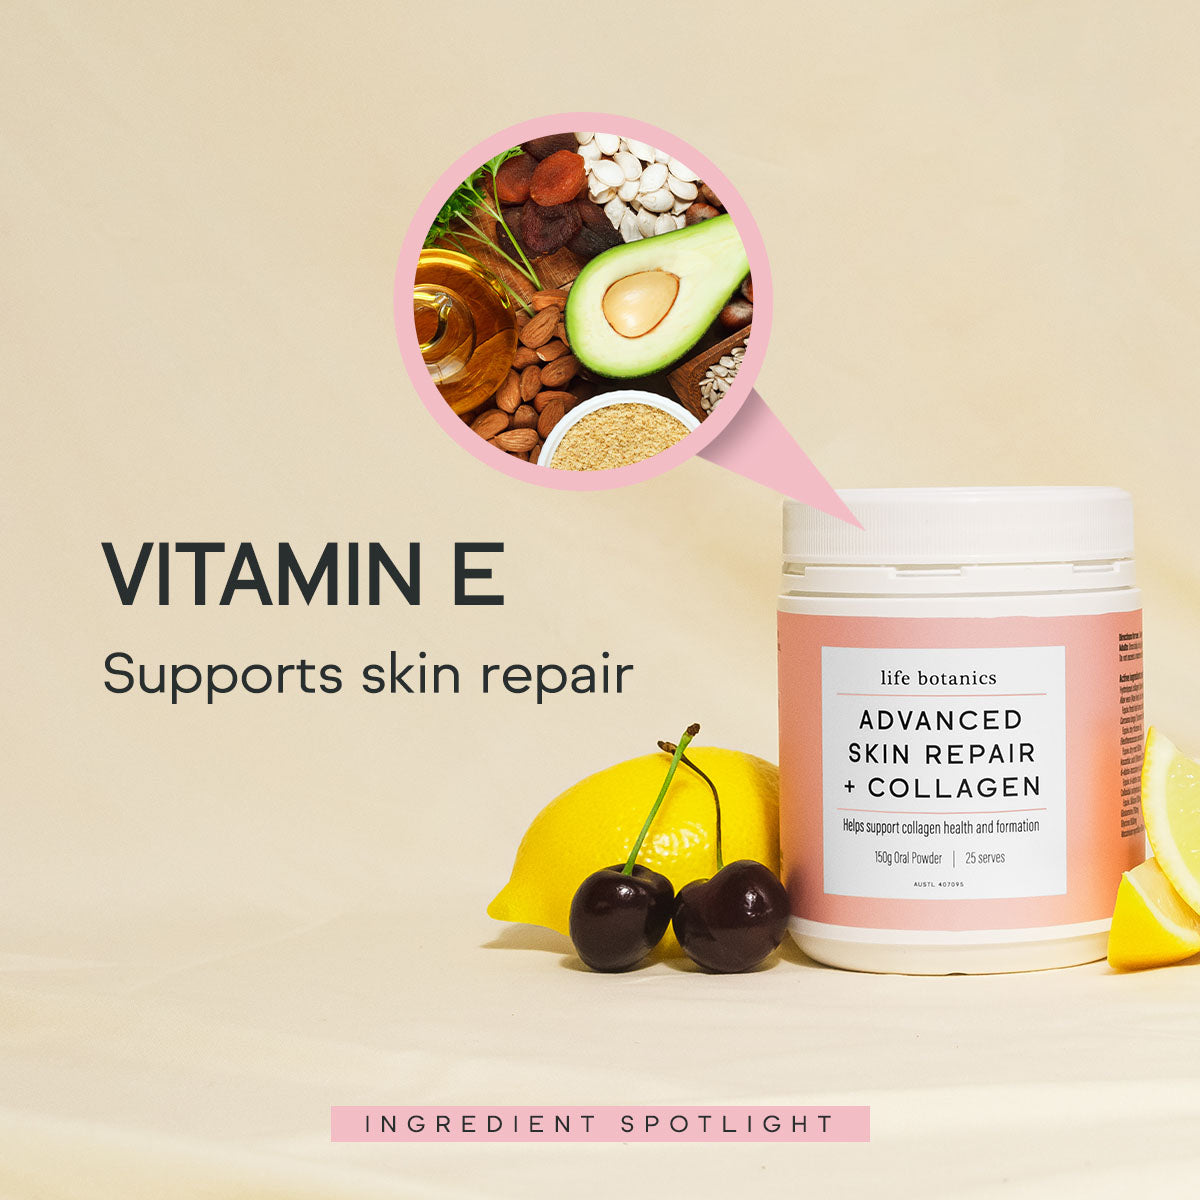 life botanics Advanced Skin Repair + Collagen Vitamin E 180